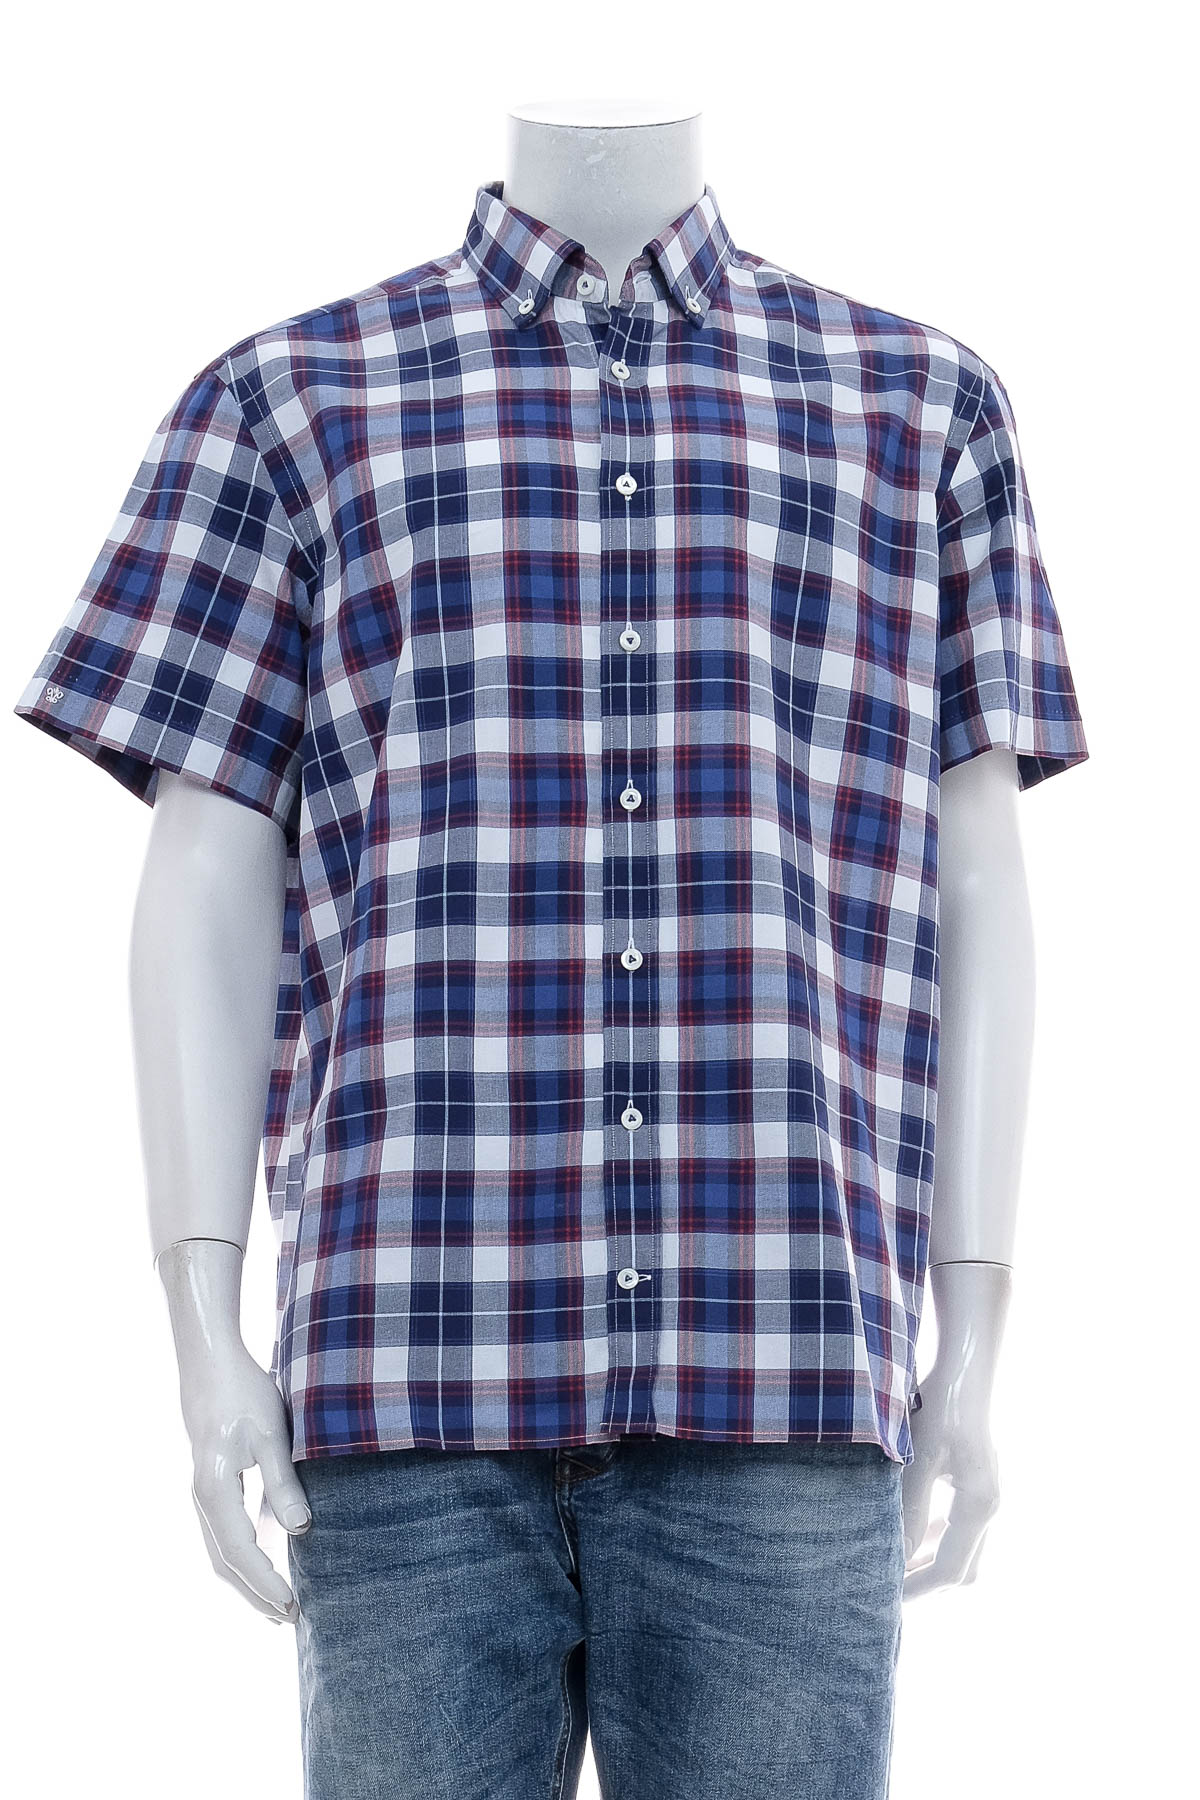 Men's shirt - Van Laack - 0